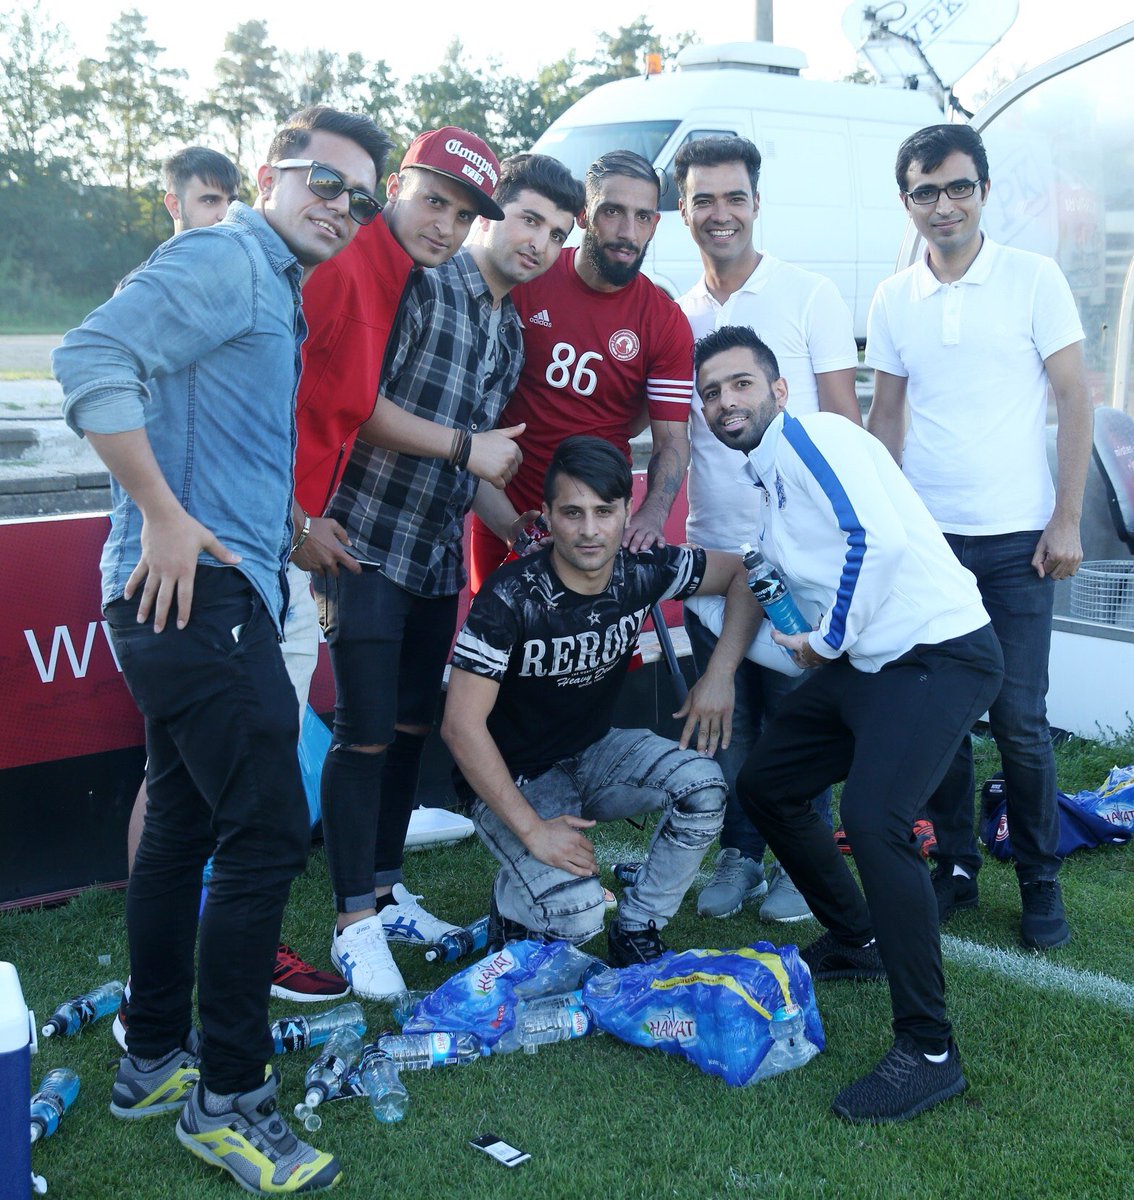 ایرانی های مقیم آلمان در کنار دژاگه (عکس)